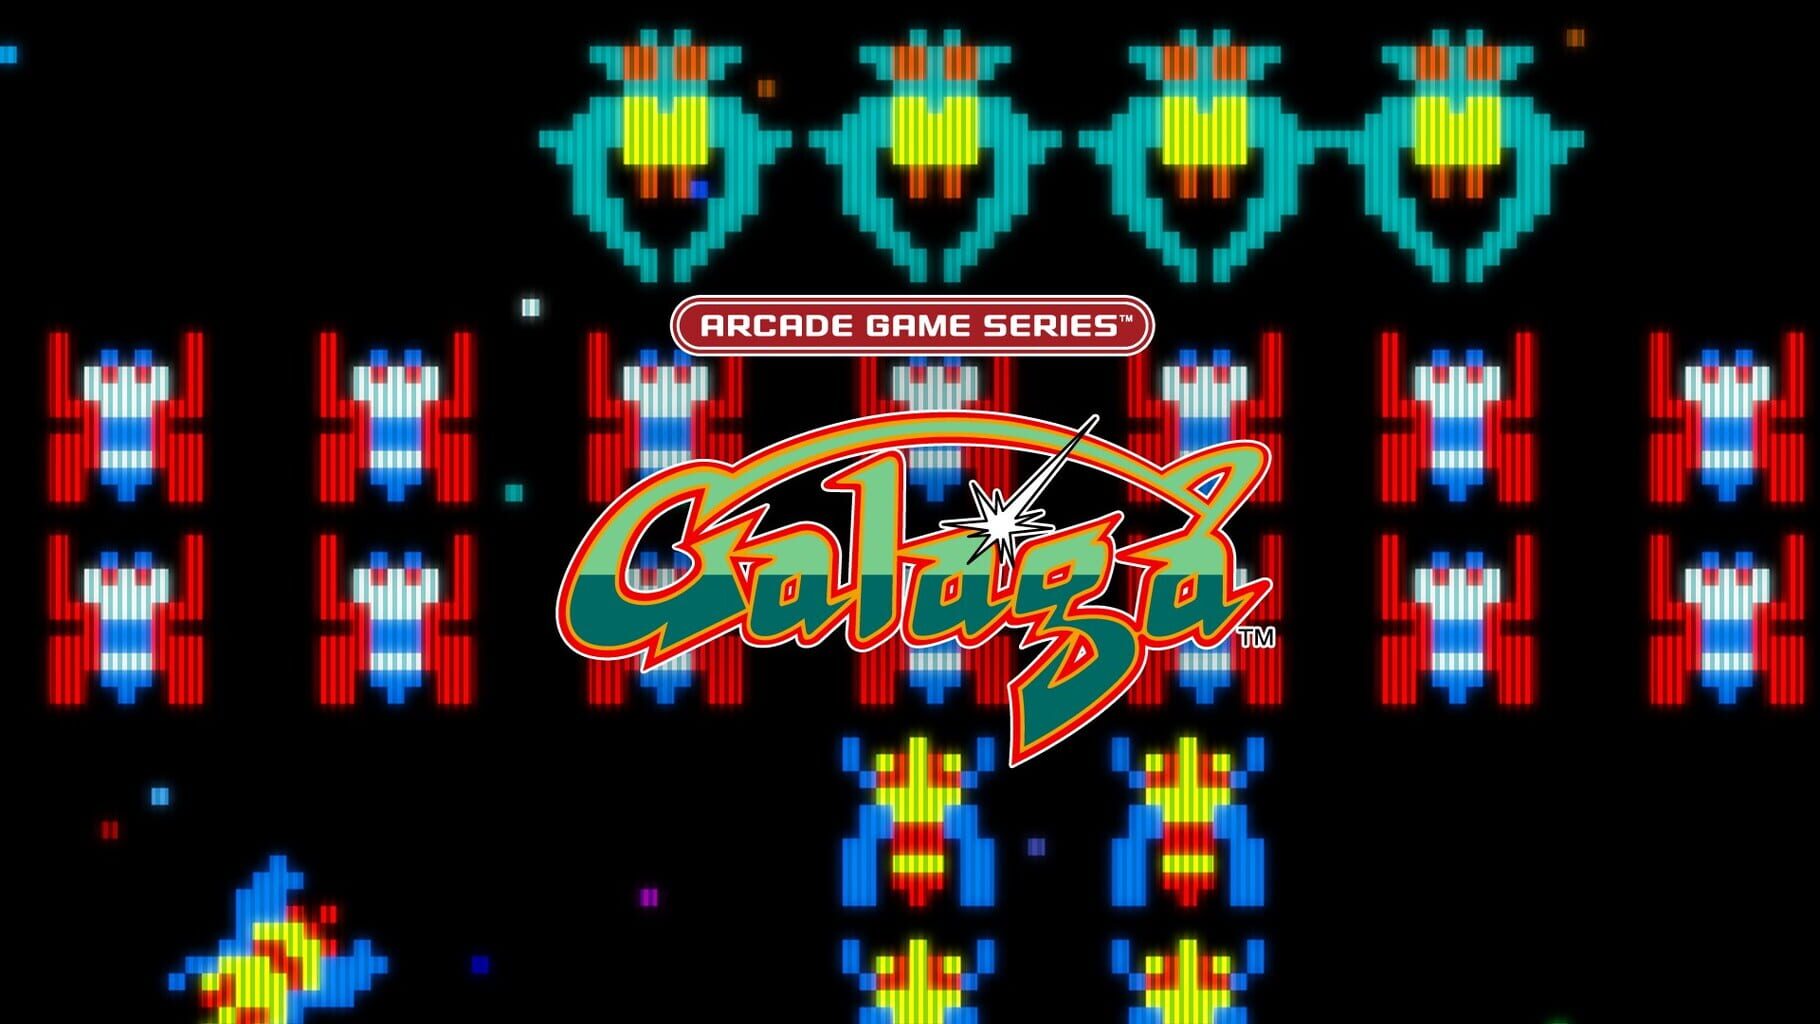 Arte - Arcade Game Series: Galaga